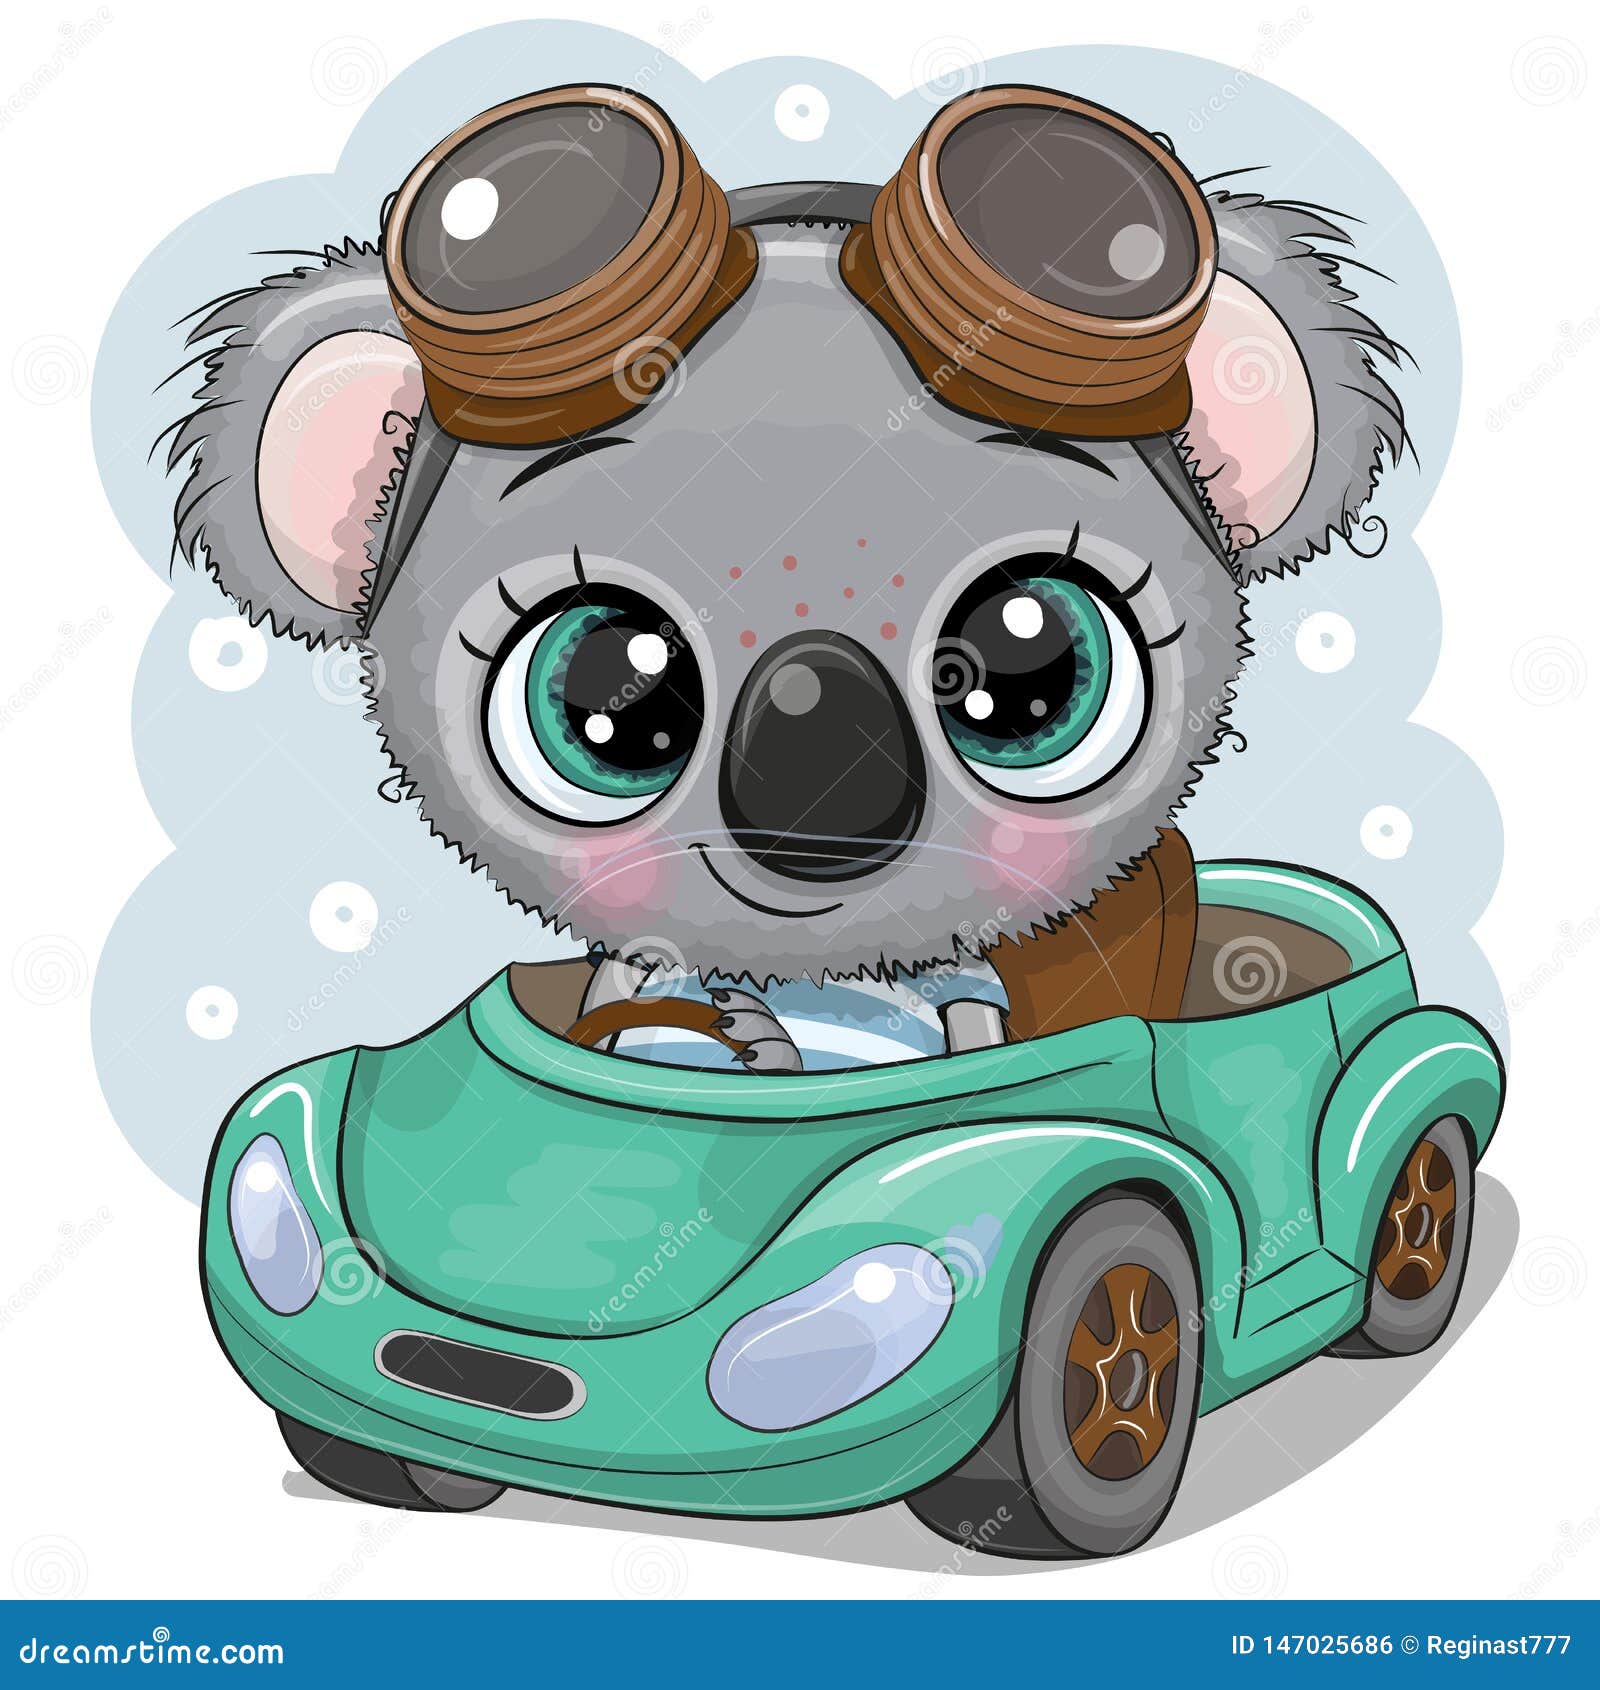 cartoon koala boy in glasses goes on a green car